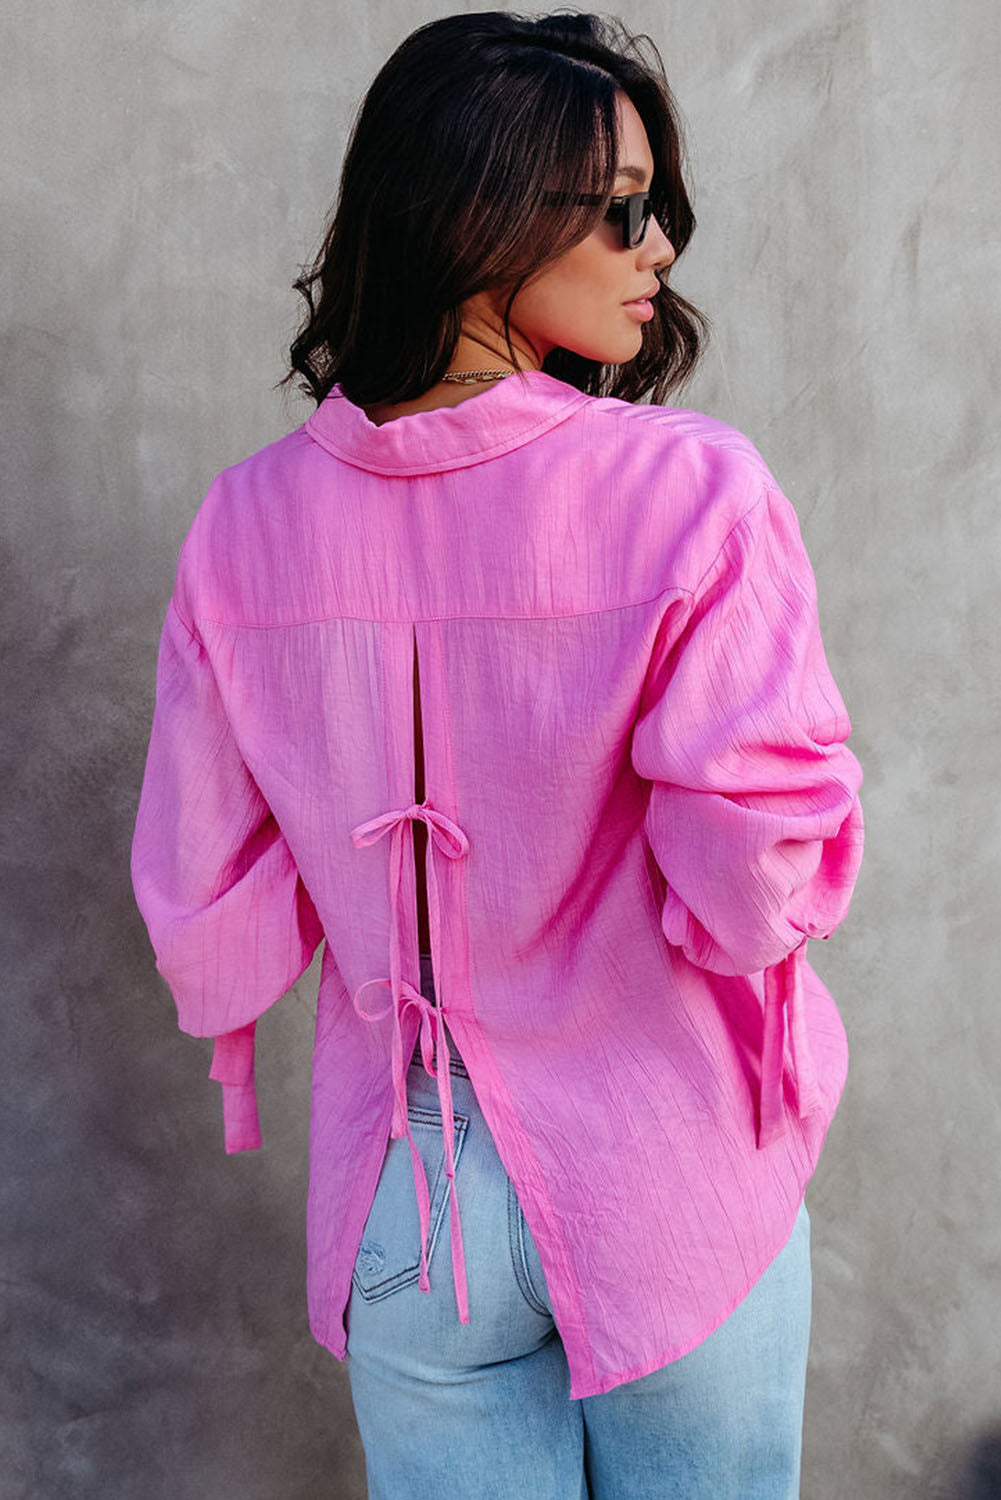 Chemise rose à manches longues boutonnée avec nœud fendu dans le dos